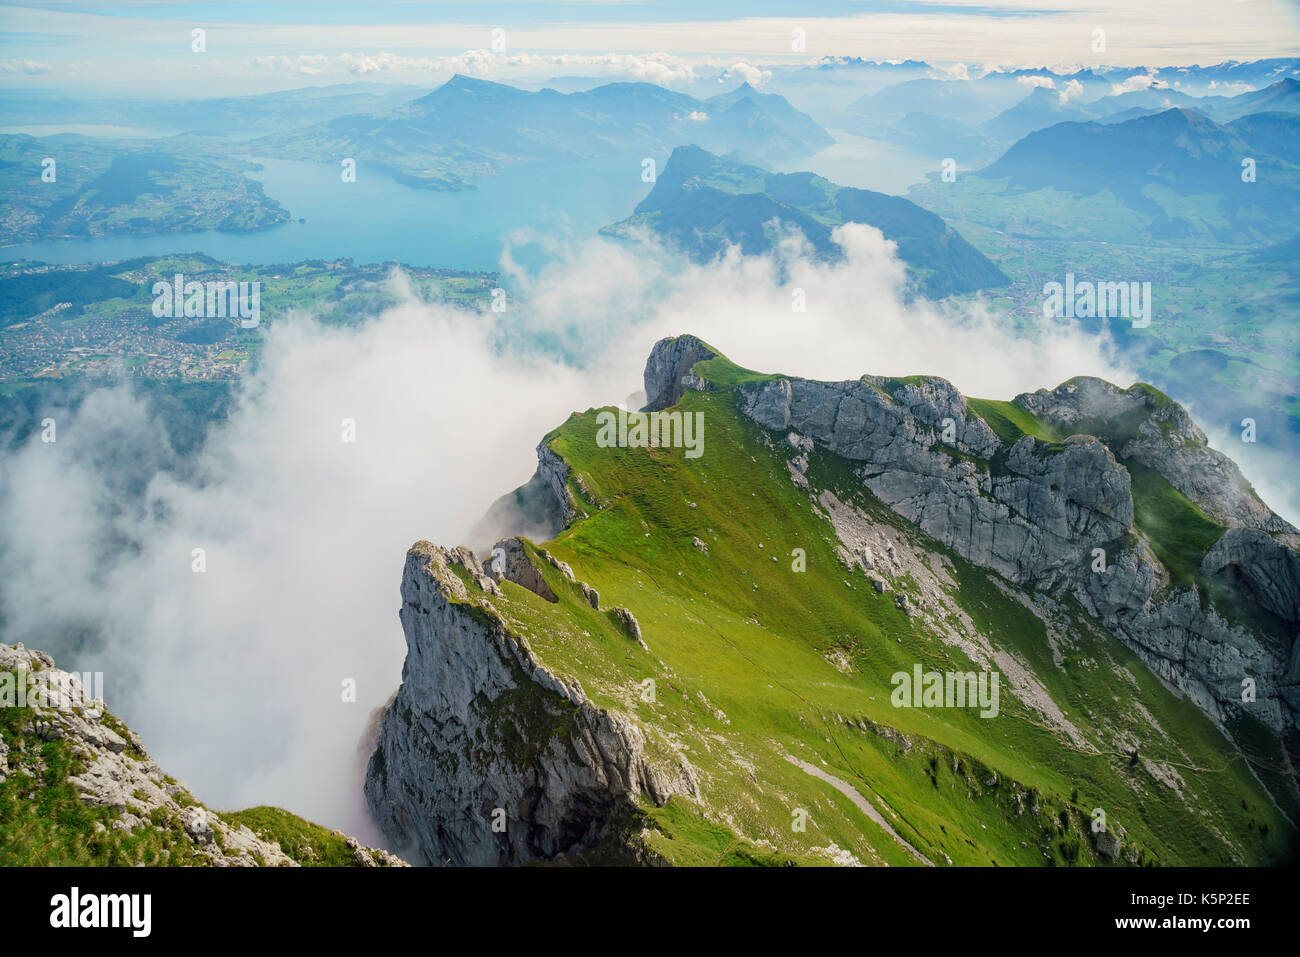 Awesome landscape with lake over Mount Pilatus, Lucerne, Switzerland Stock Photo